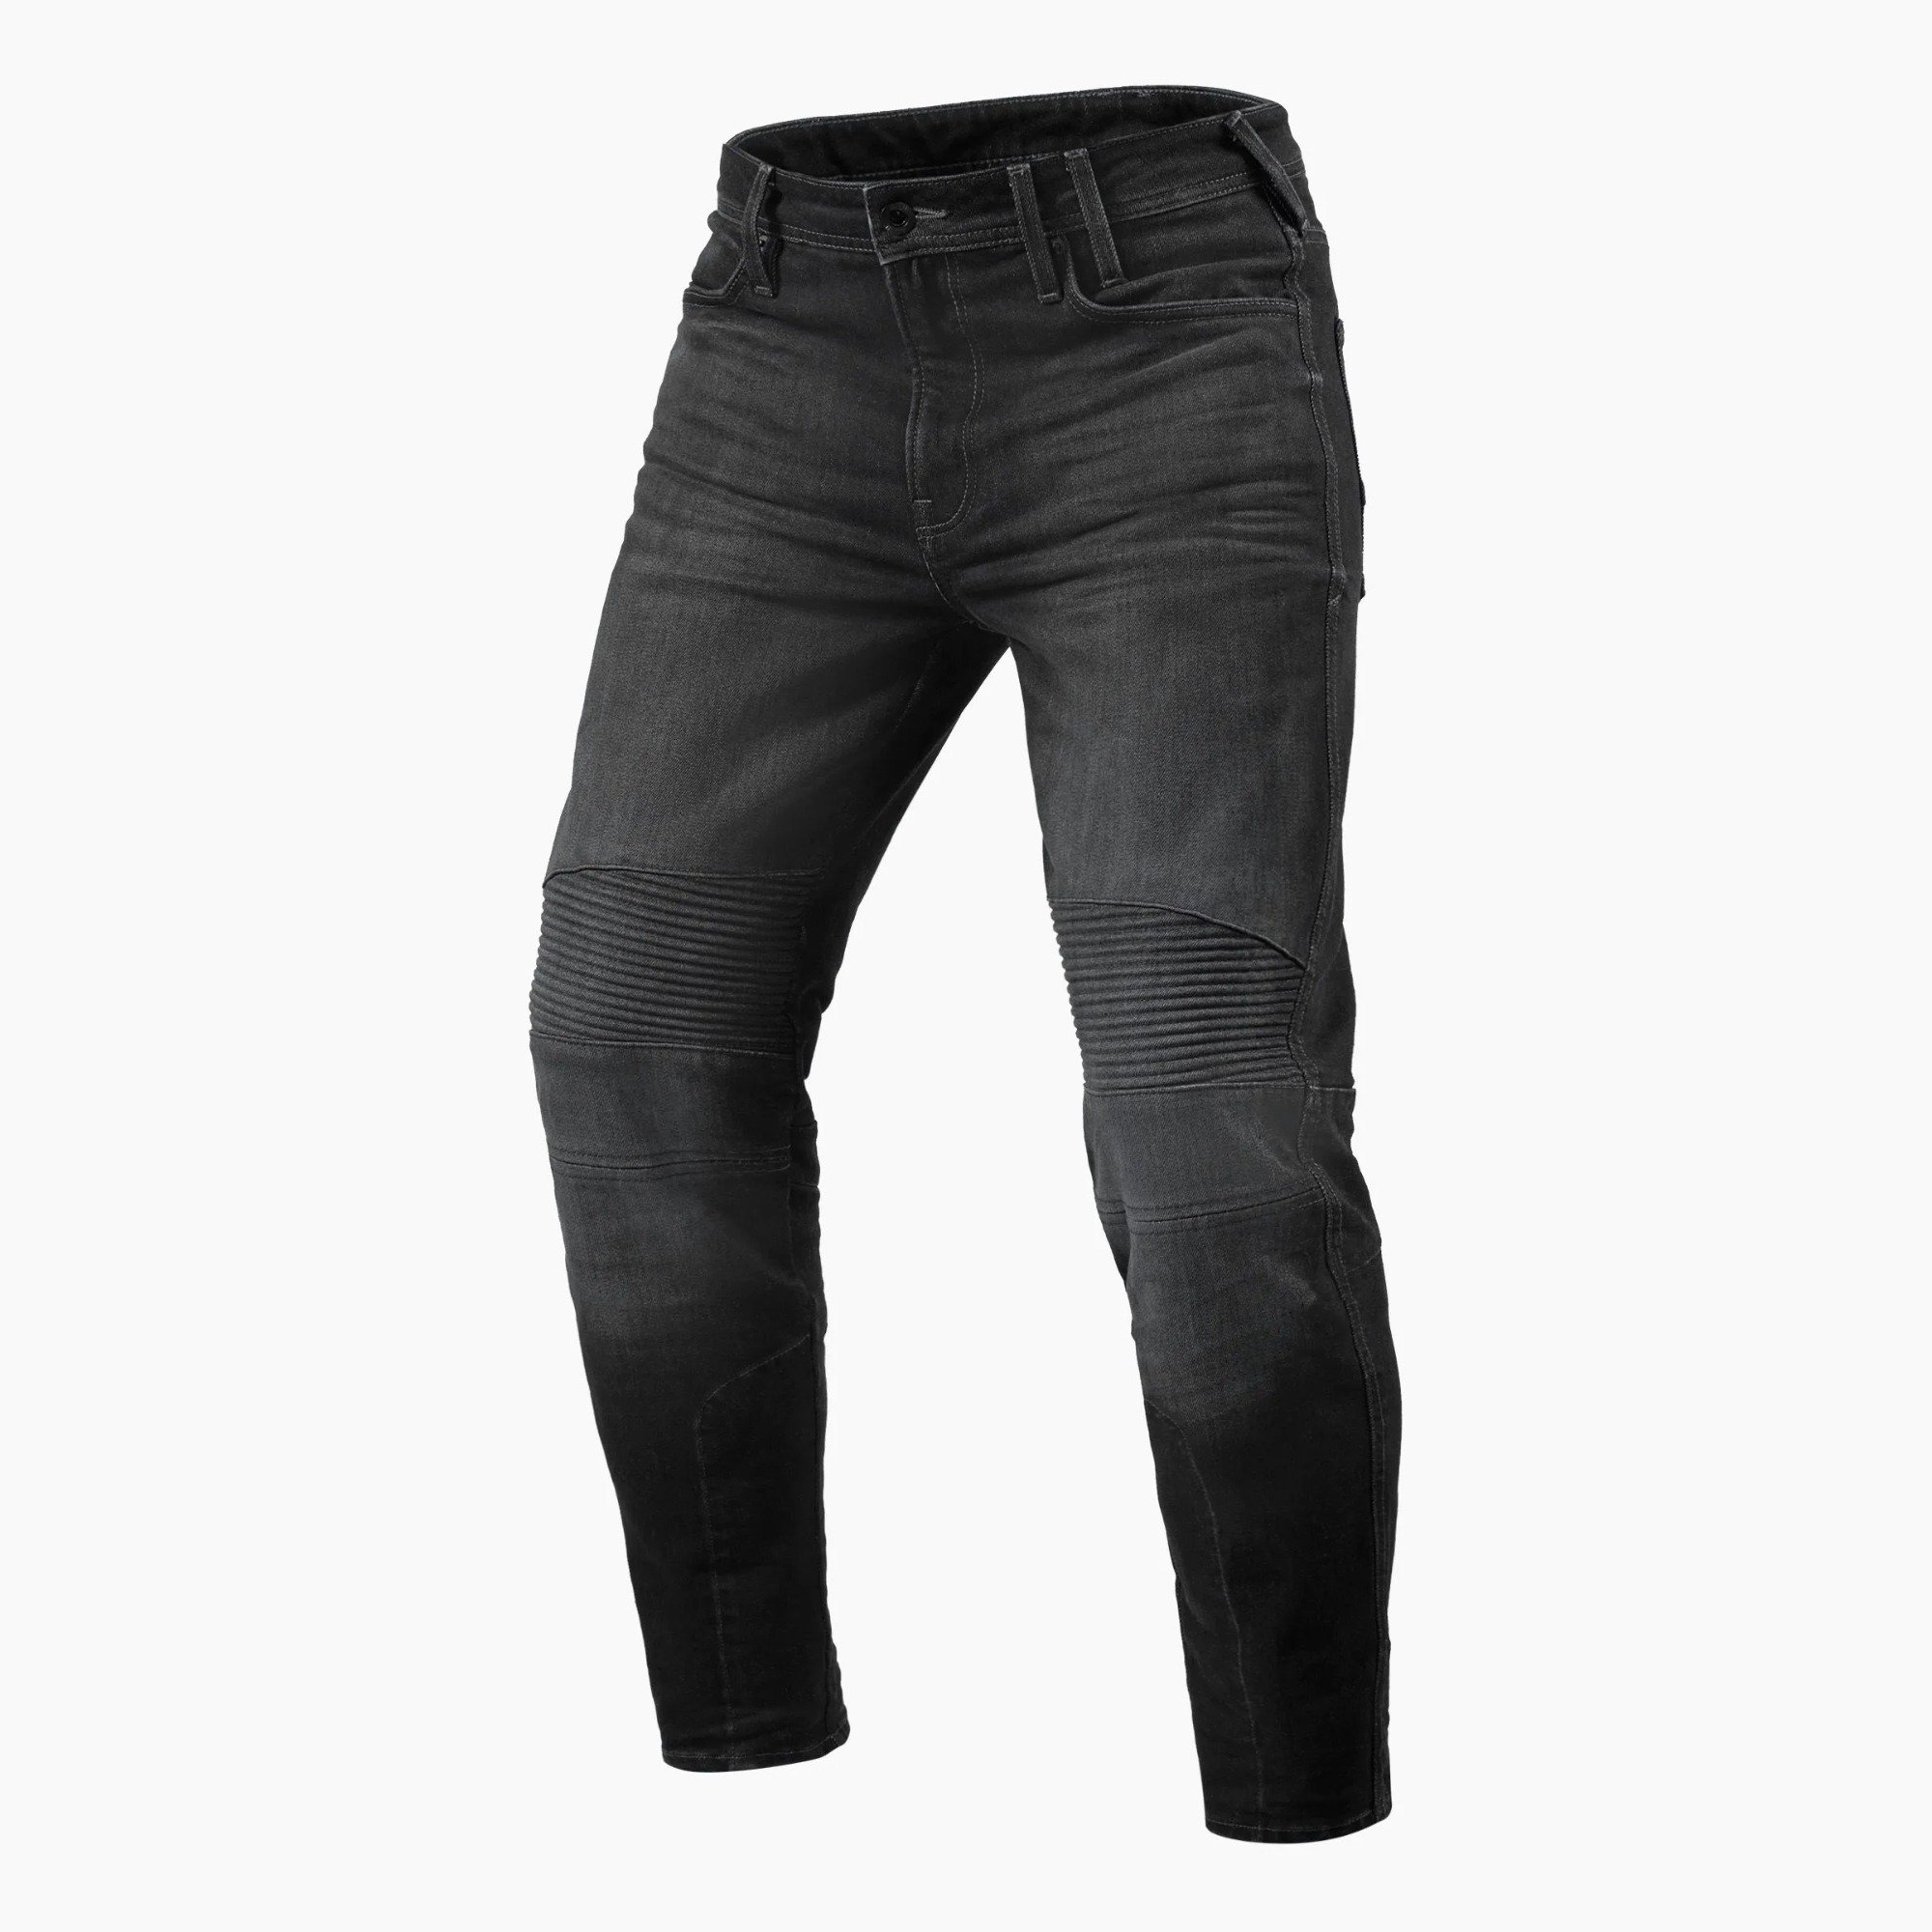 Image of REV'IT! Jeans Moto 2 TF Dark Grey Used Motorcycle Jeans Size L34/W32 EN